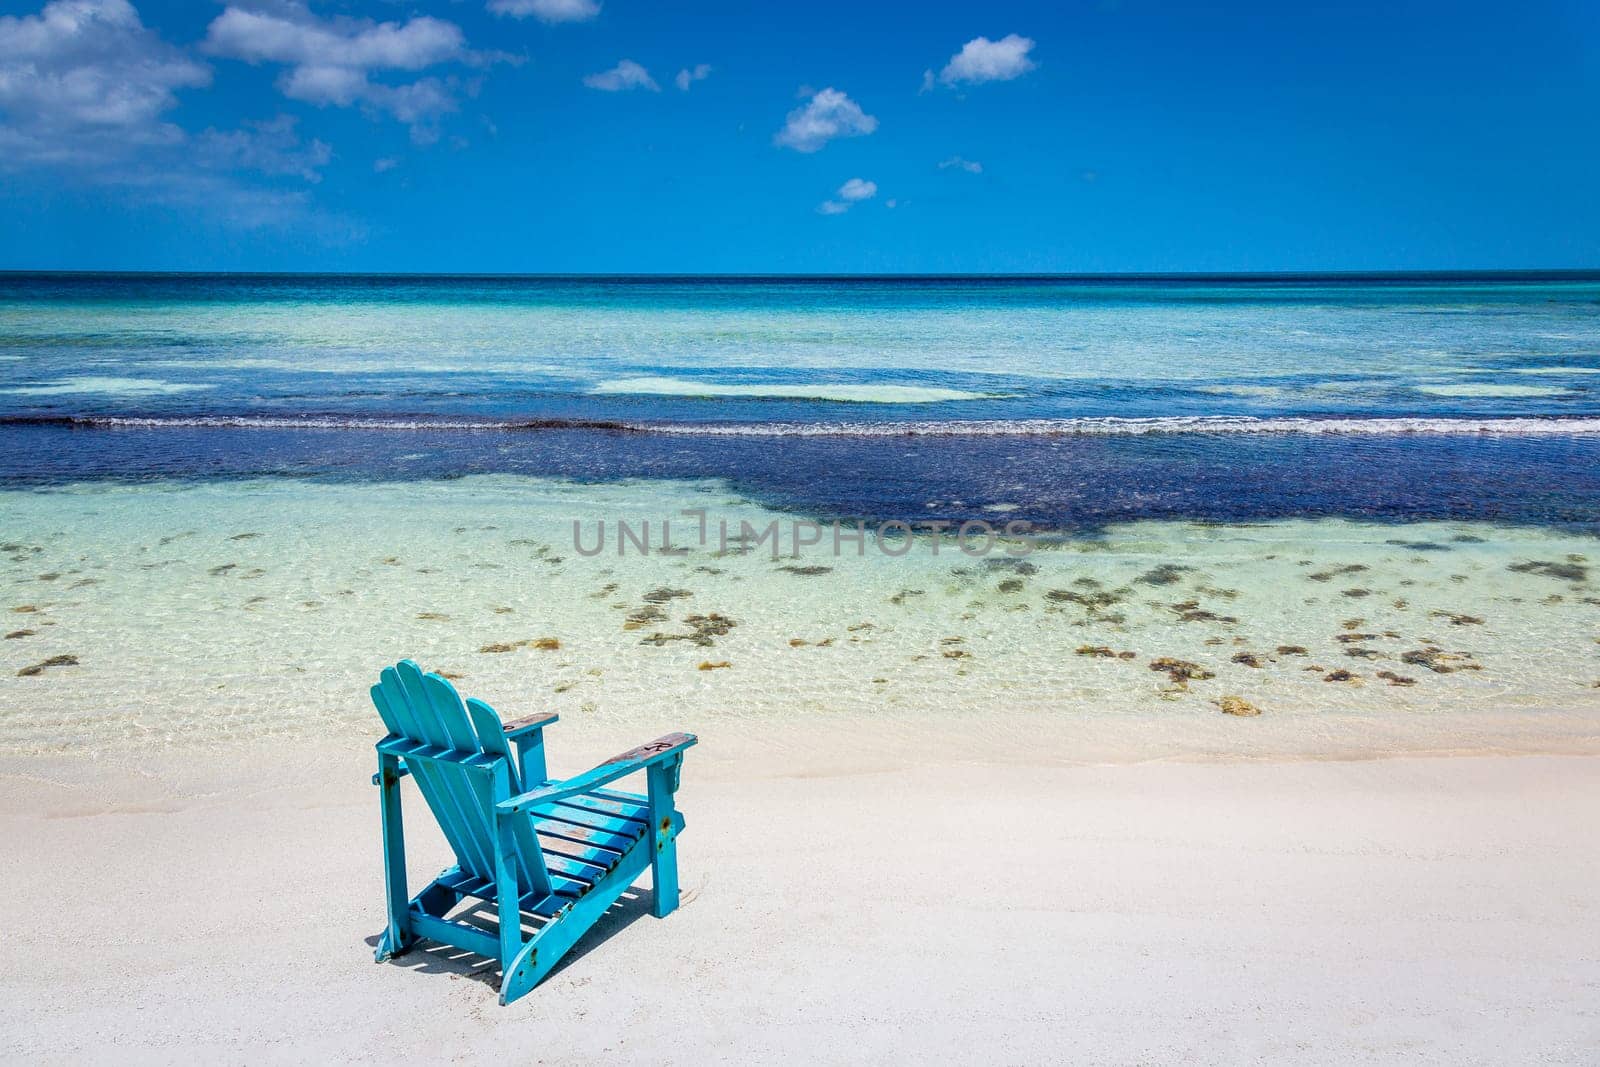 Adirondack Chair and secluded eagle beach on Aruba island, Caribbean sea by positivetravelart